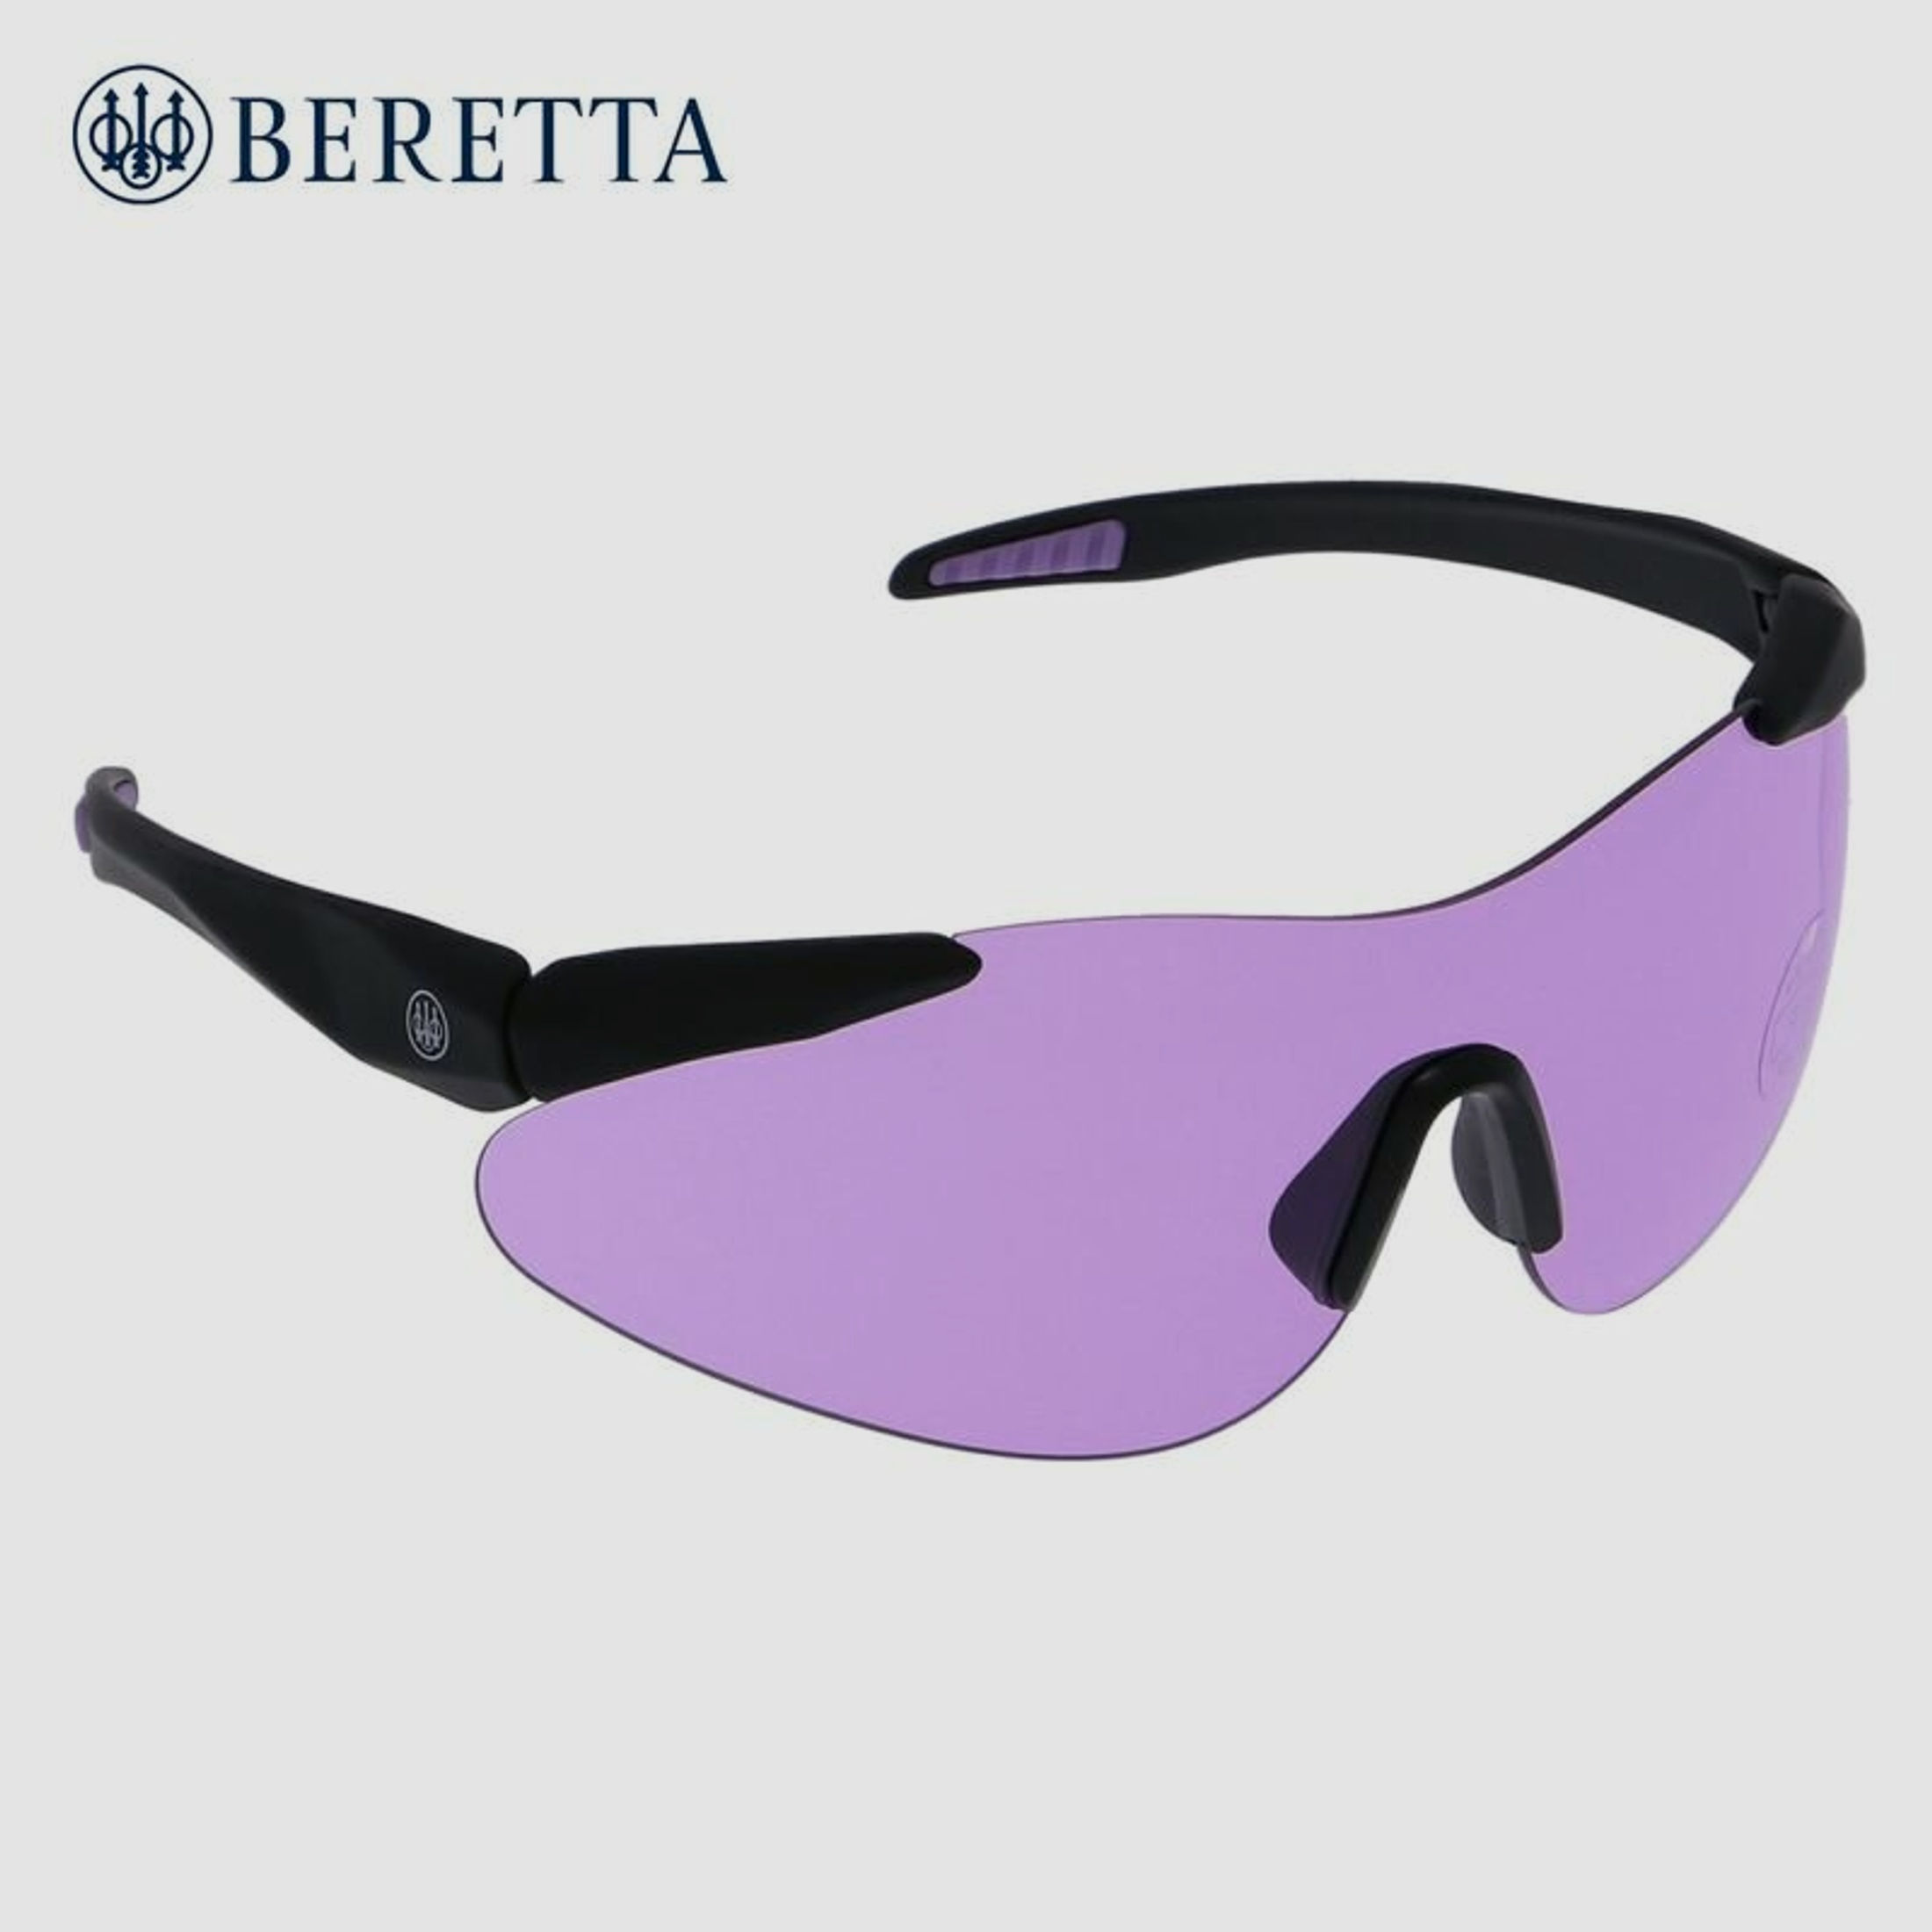 Beretta Schießbrille lila mit Stoffbeutel